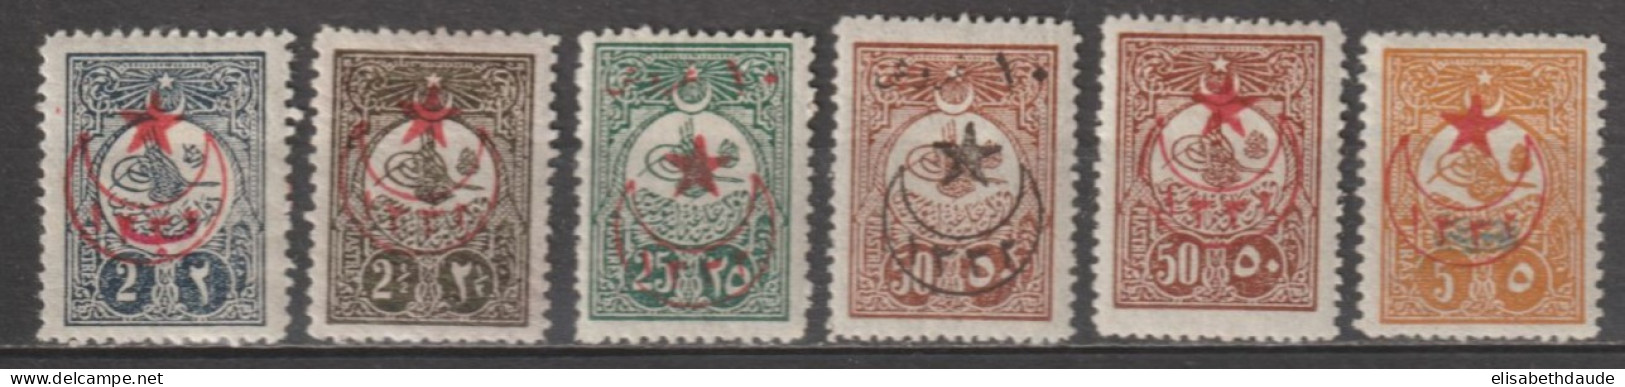 1916 - TURQUIE - YVERT N°388/391+394+395 * MH - COTE = 340 EUR. - Unused Stamps